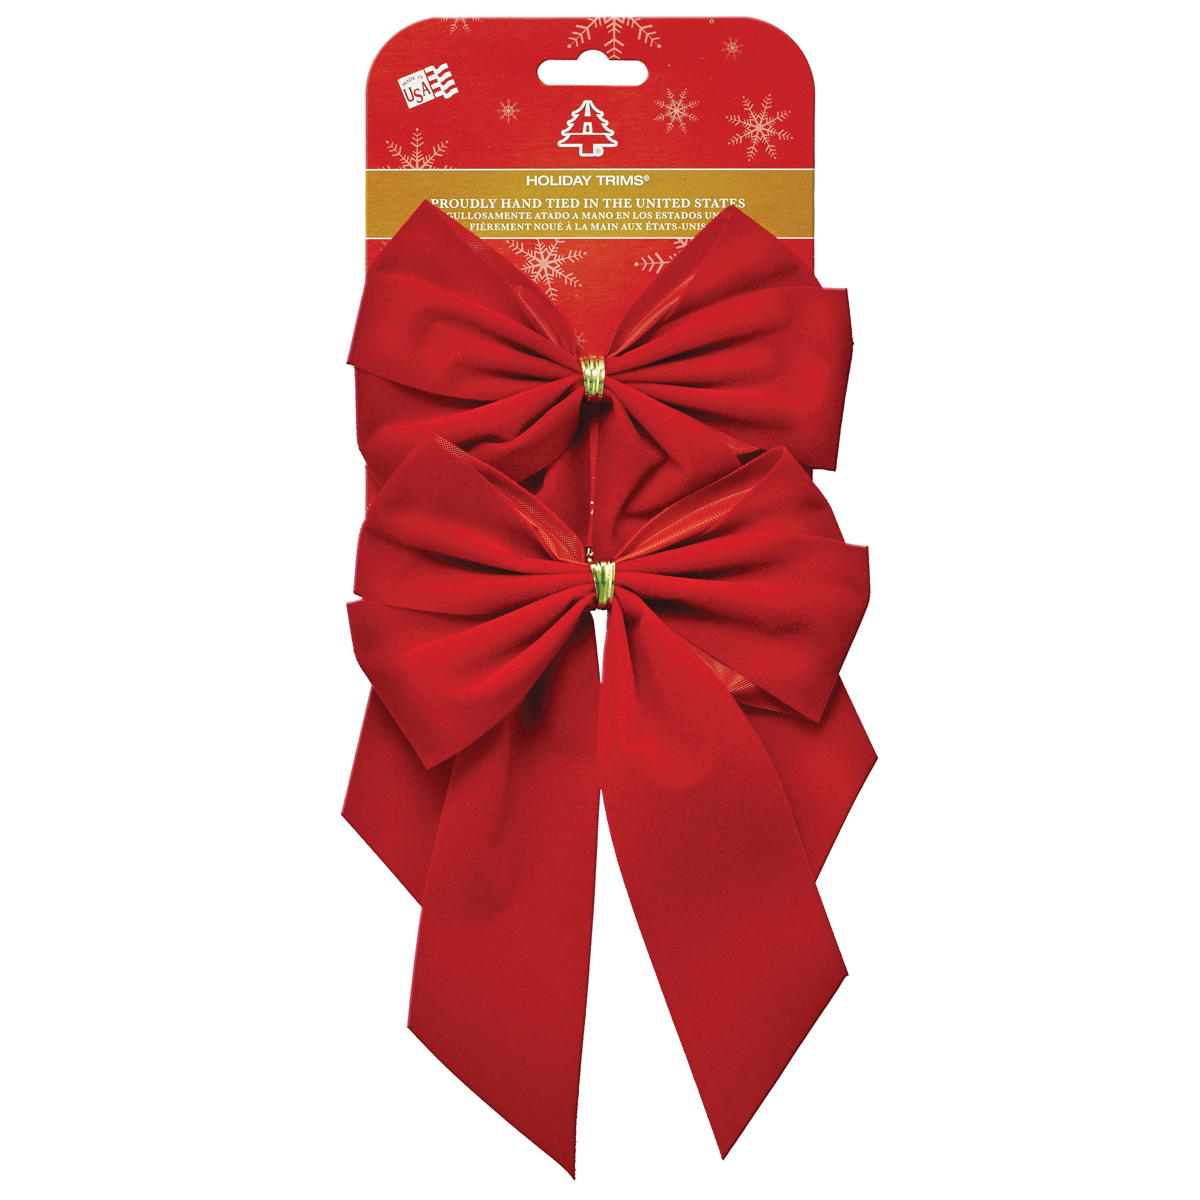 Holidaytrims 7320 Gift Bow, Velvet, Red, 2 PK - 1